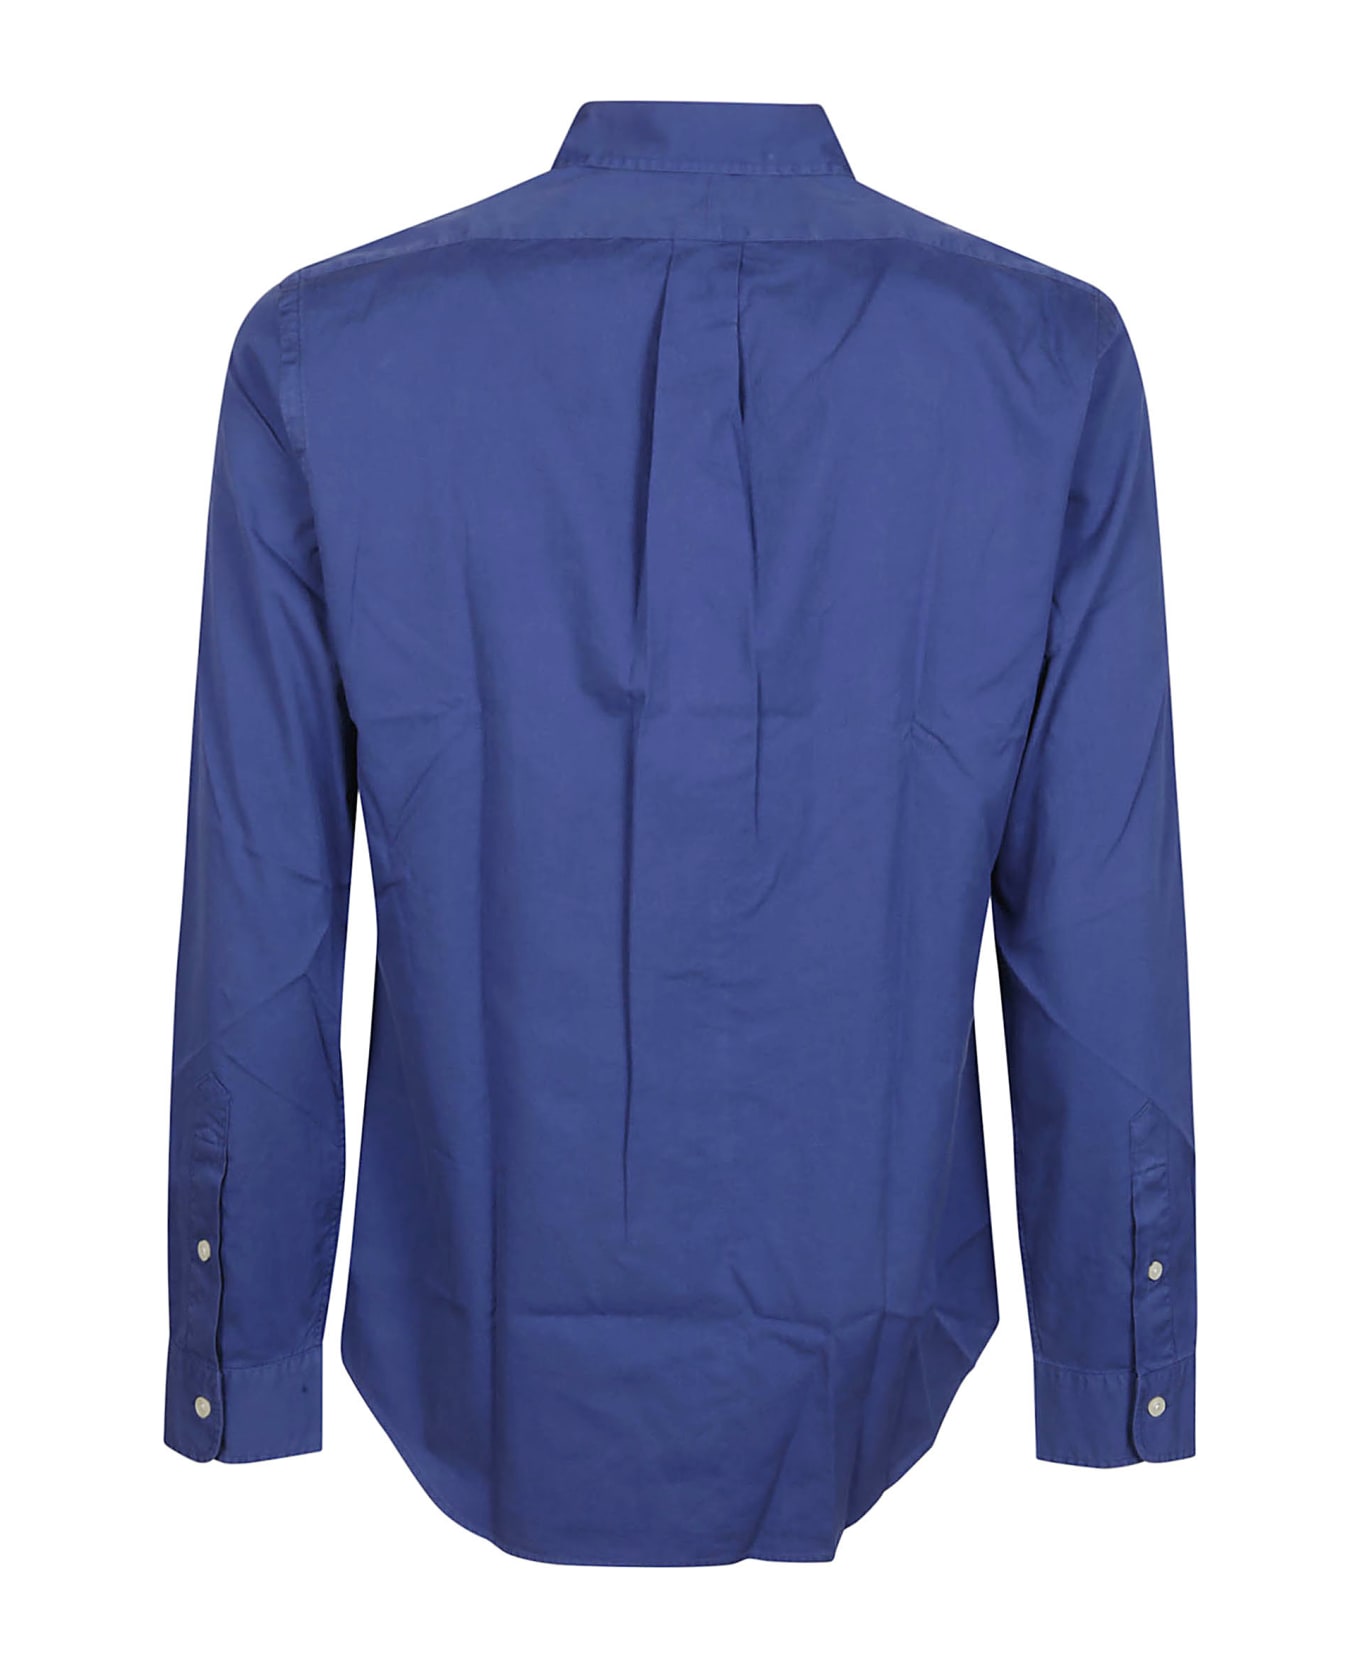 Polo Ralph Lauren Long Sleeve Sport Shirt Polo Ralph Lauren - BLUE シャツ